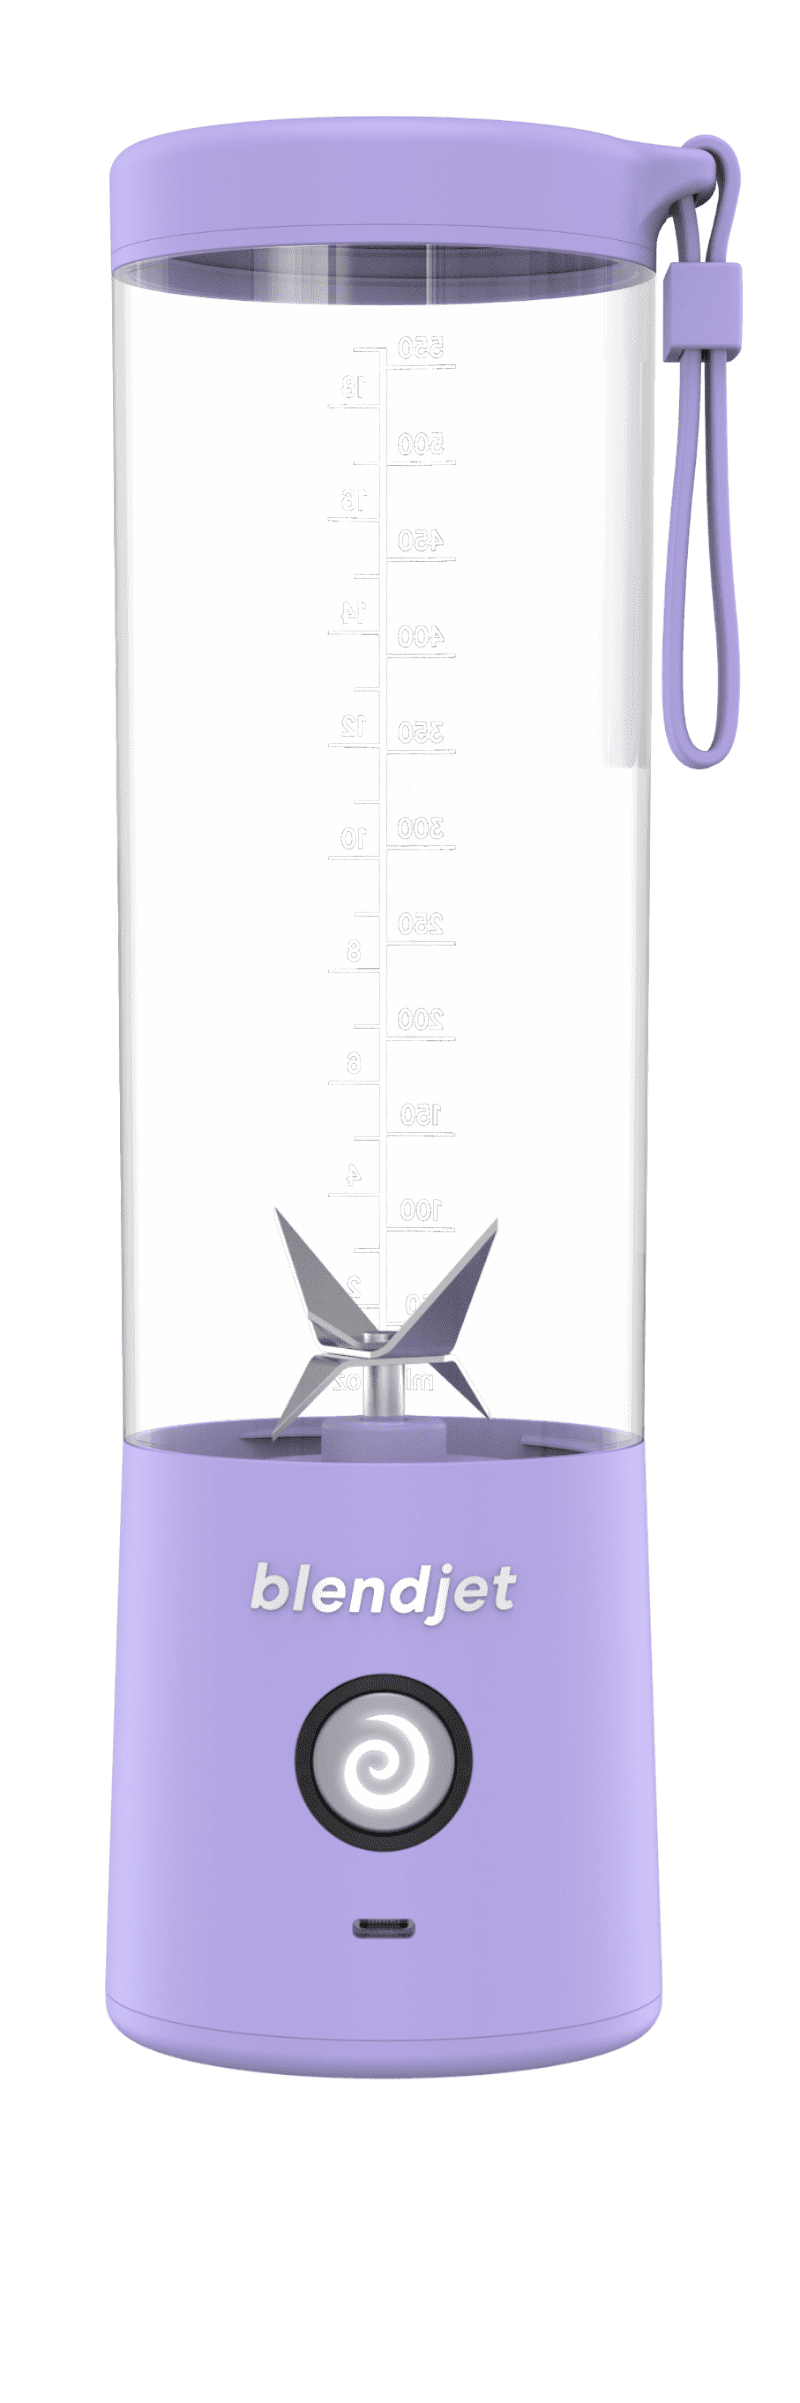 BlendJet 2 portable blender review — TODAY